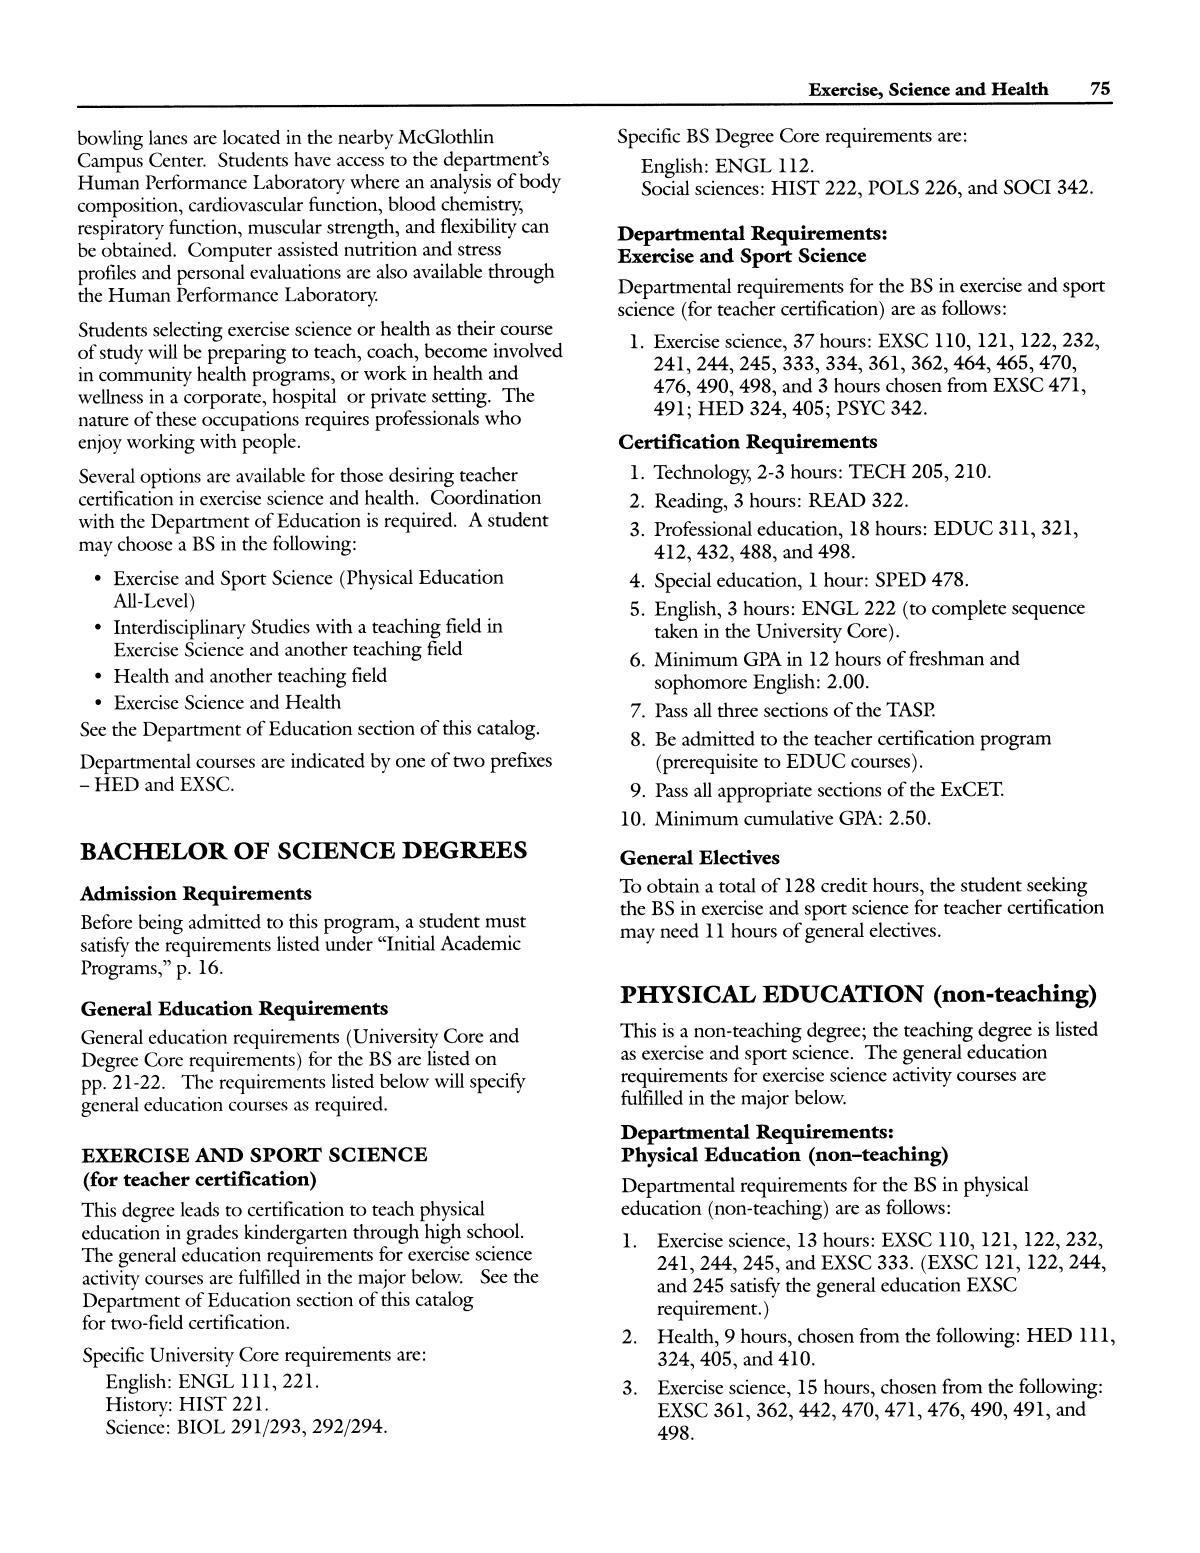 Catalog of Abilene Christian University, 1997-1998
                                                
                                                    75
                                                